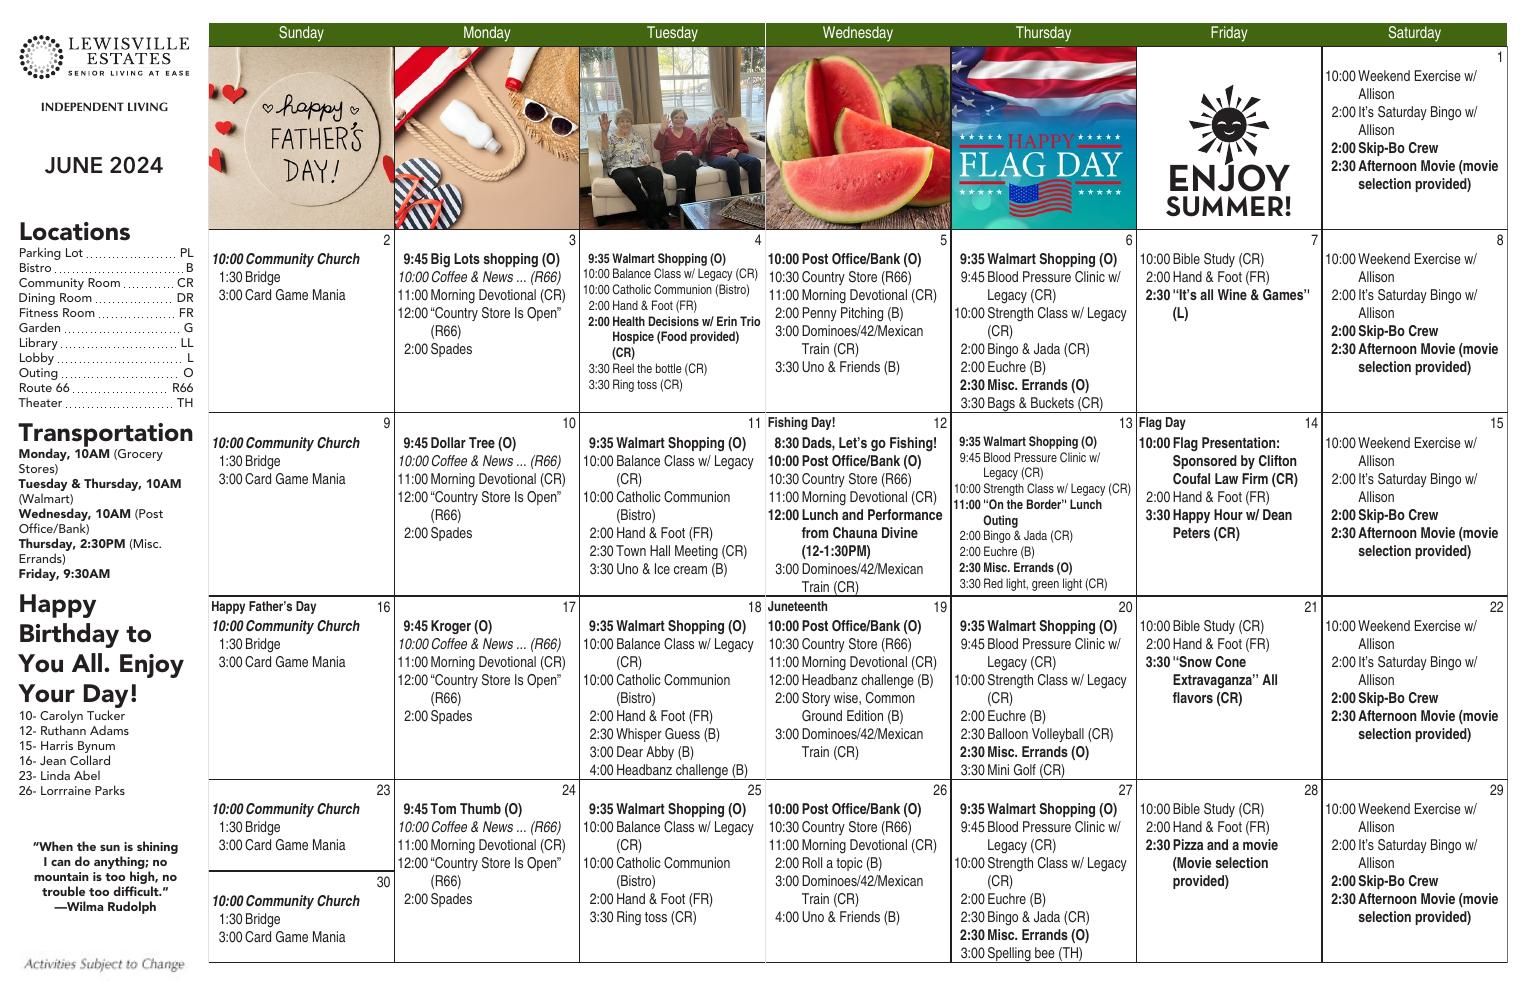 Independent Living Event Calendar